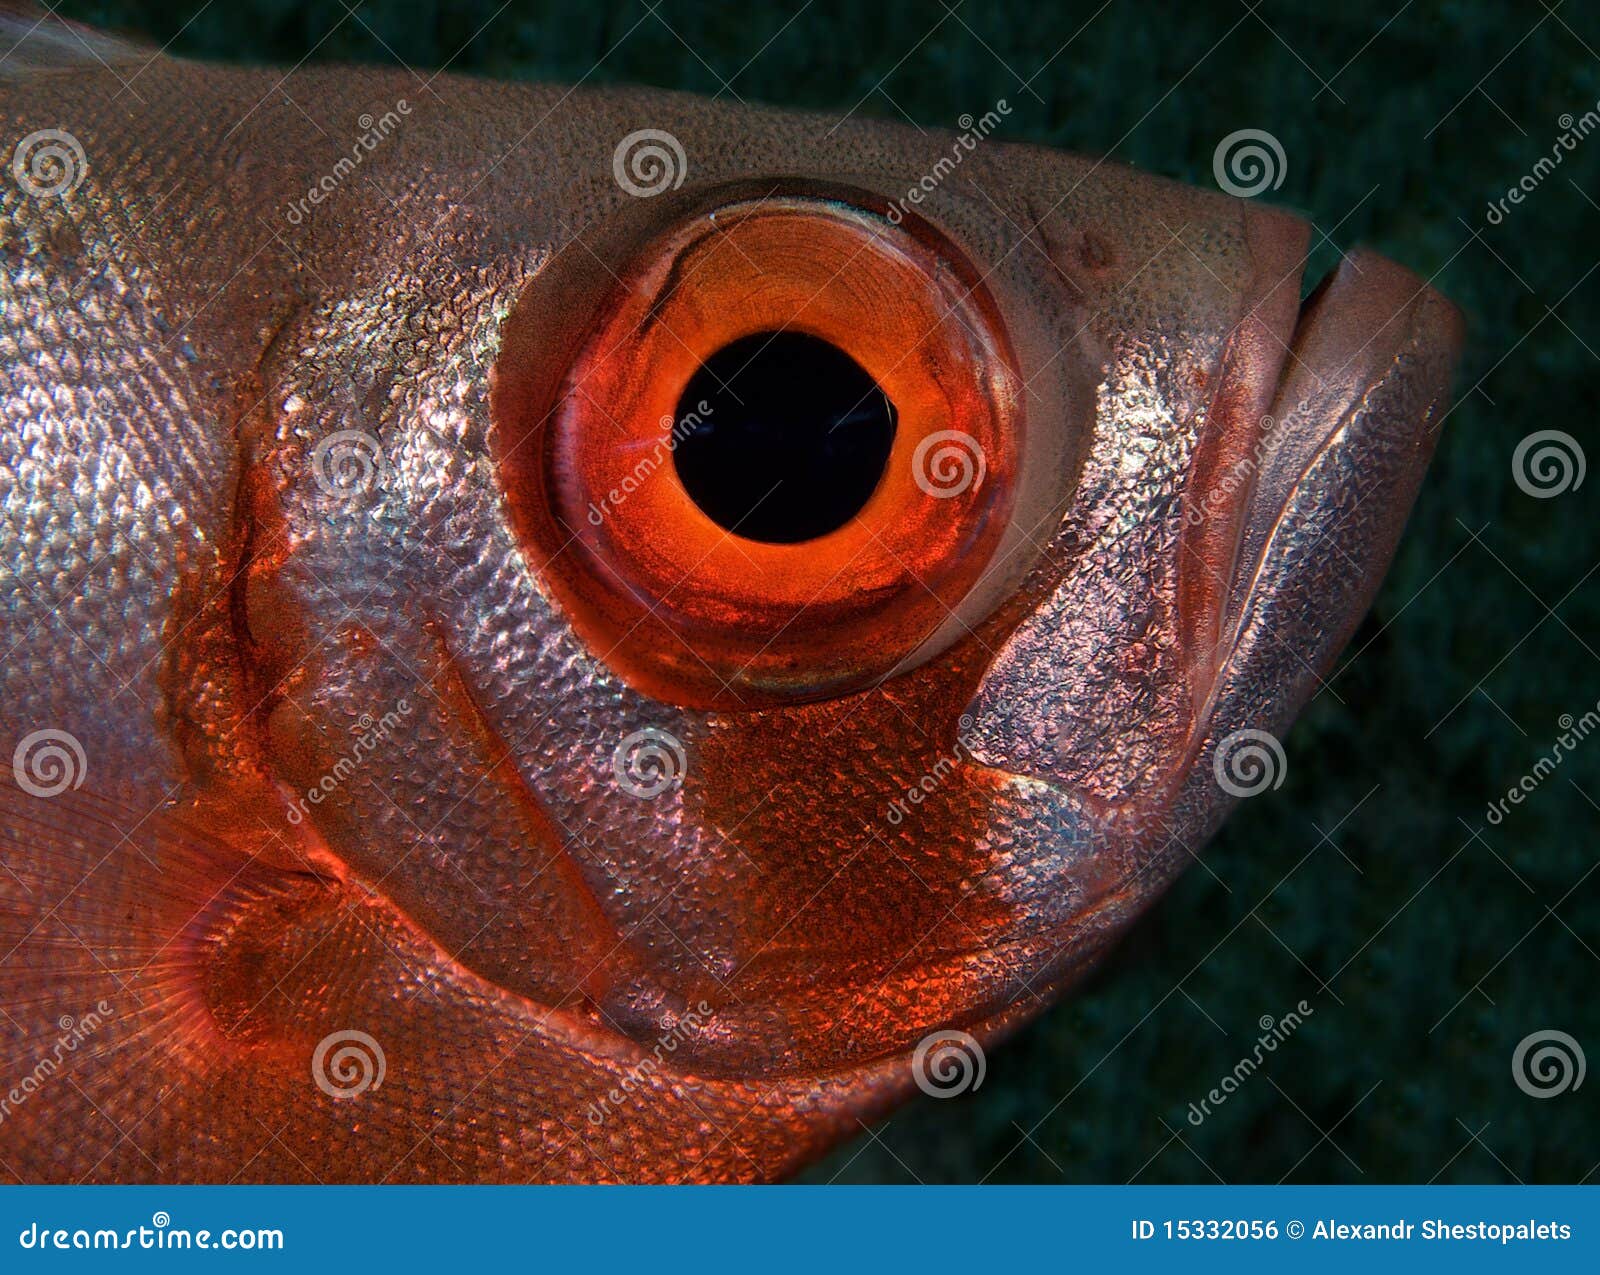 鱼眼镜头是怎么「鱼眼」的？ - 知乎